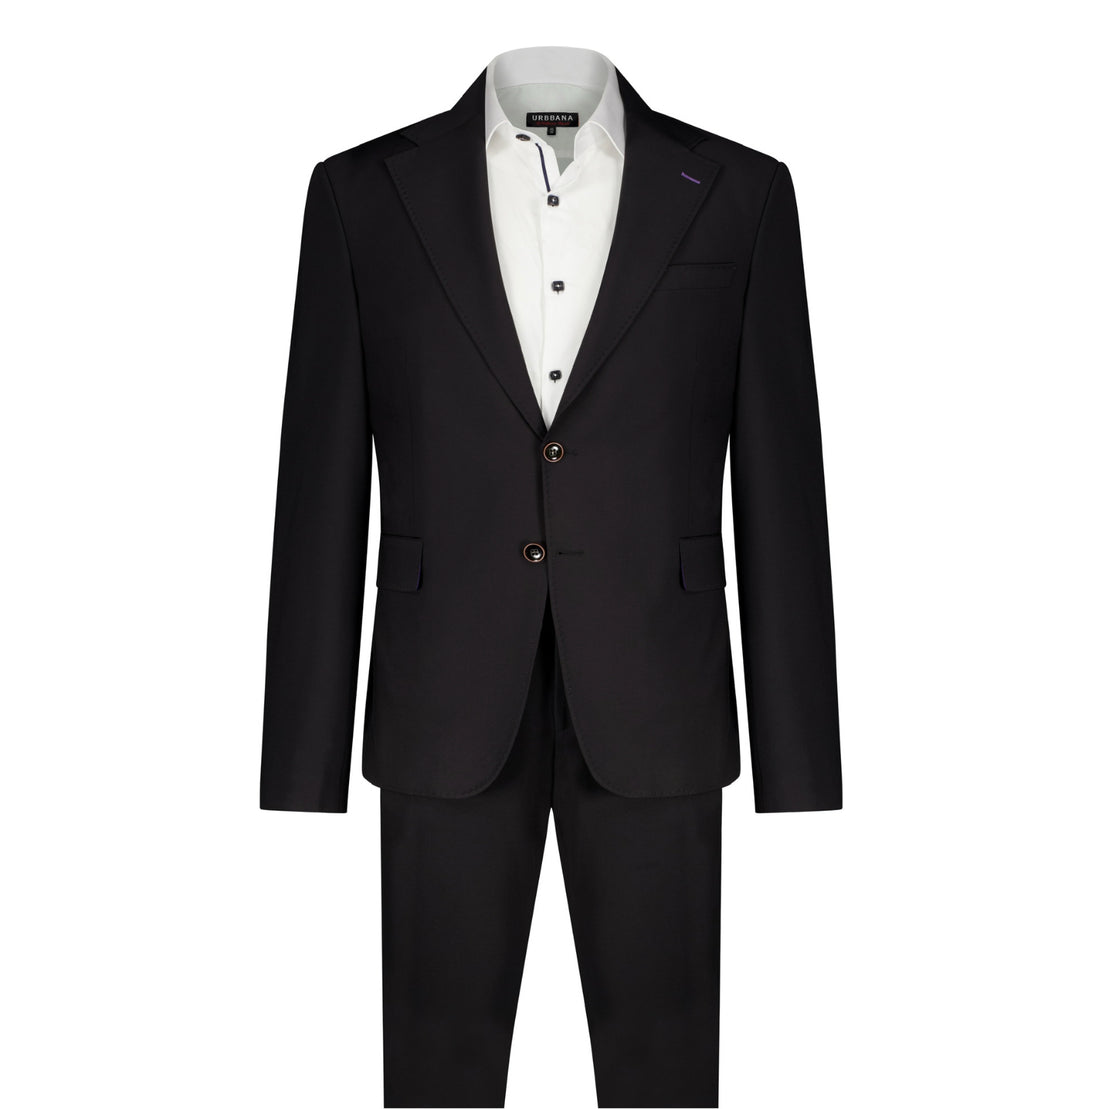 The Deniz Suit - Suit by Urbbana